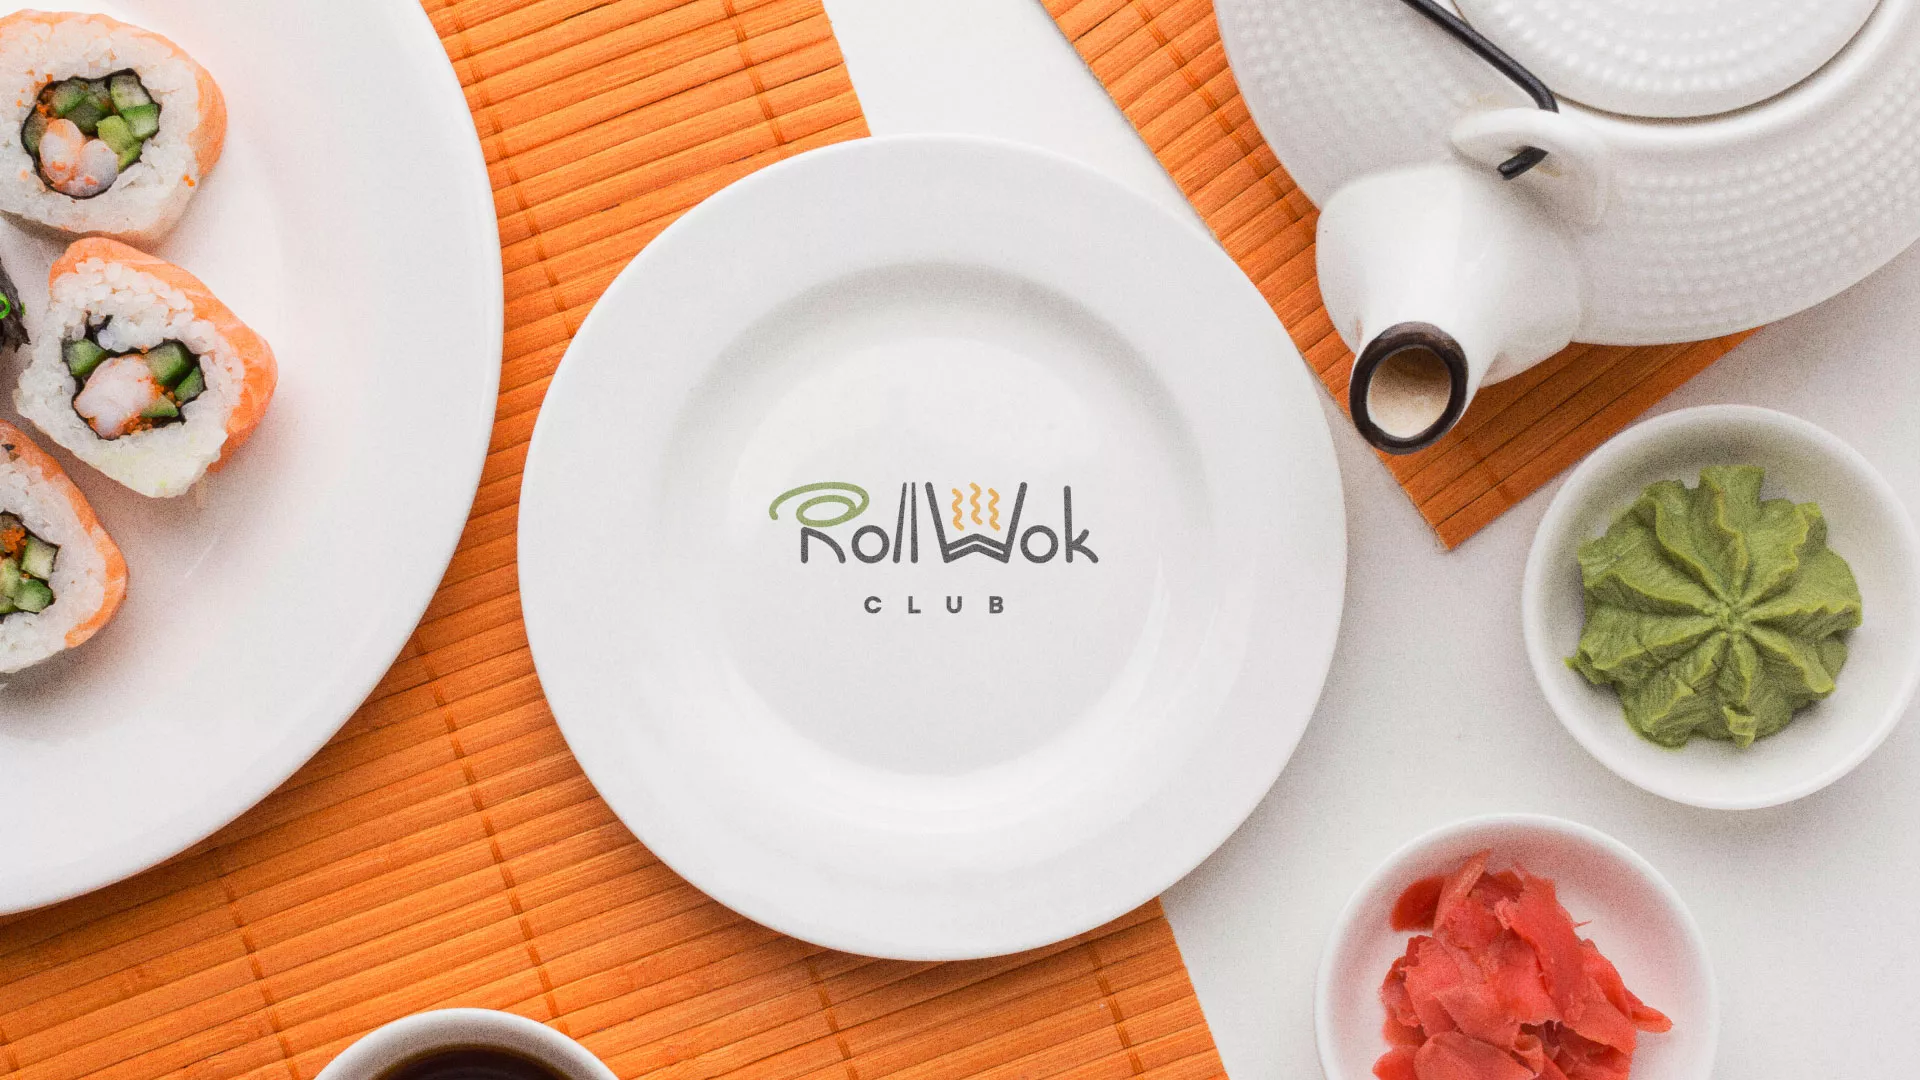 Разработка логотипа и фирменного стиля суши-бара «Roll Wok Club» в Богородске